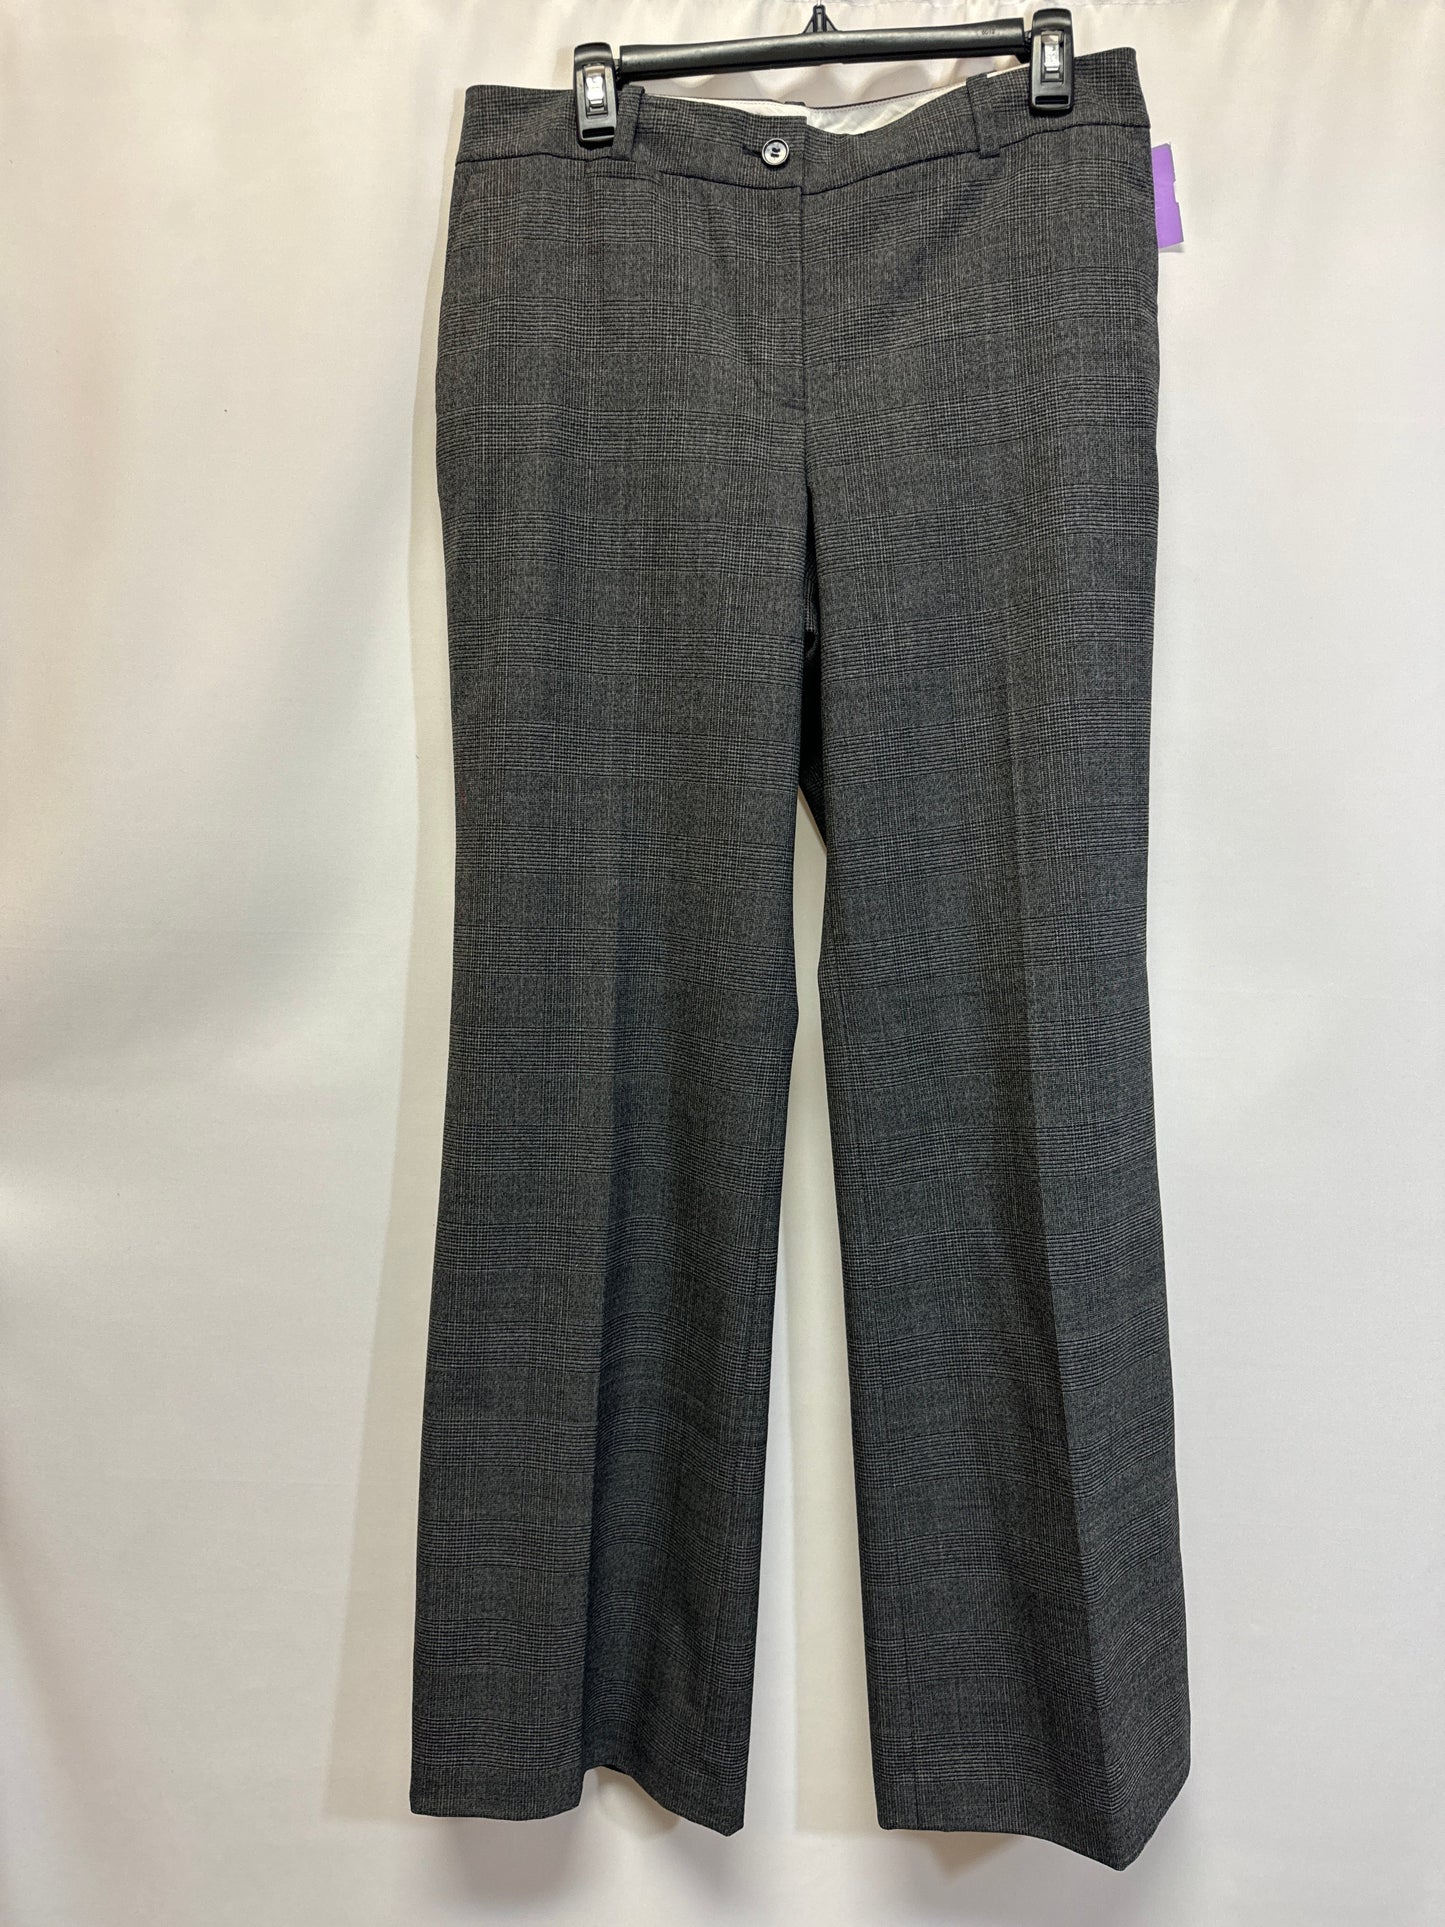 Grey Pants Dress Ann Taylor, Size 10